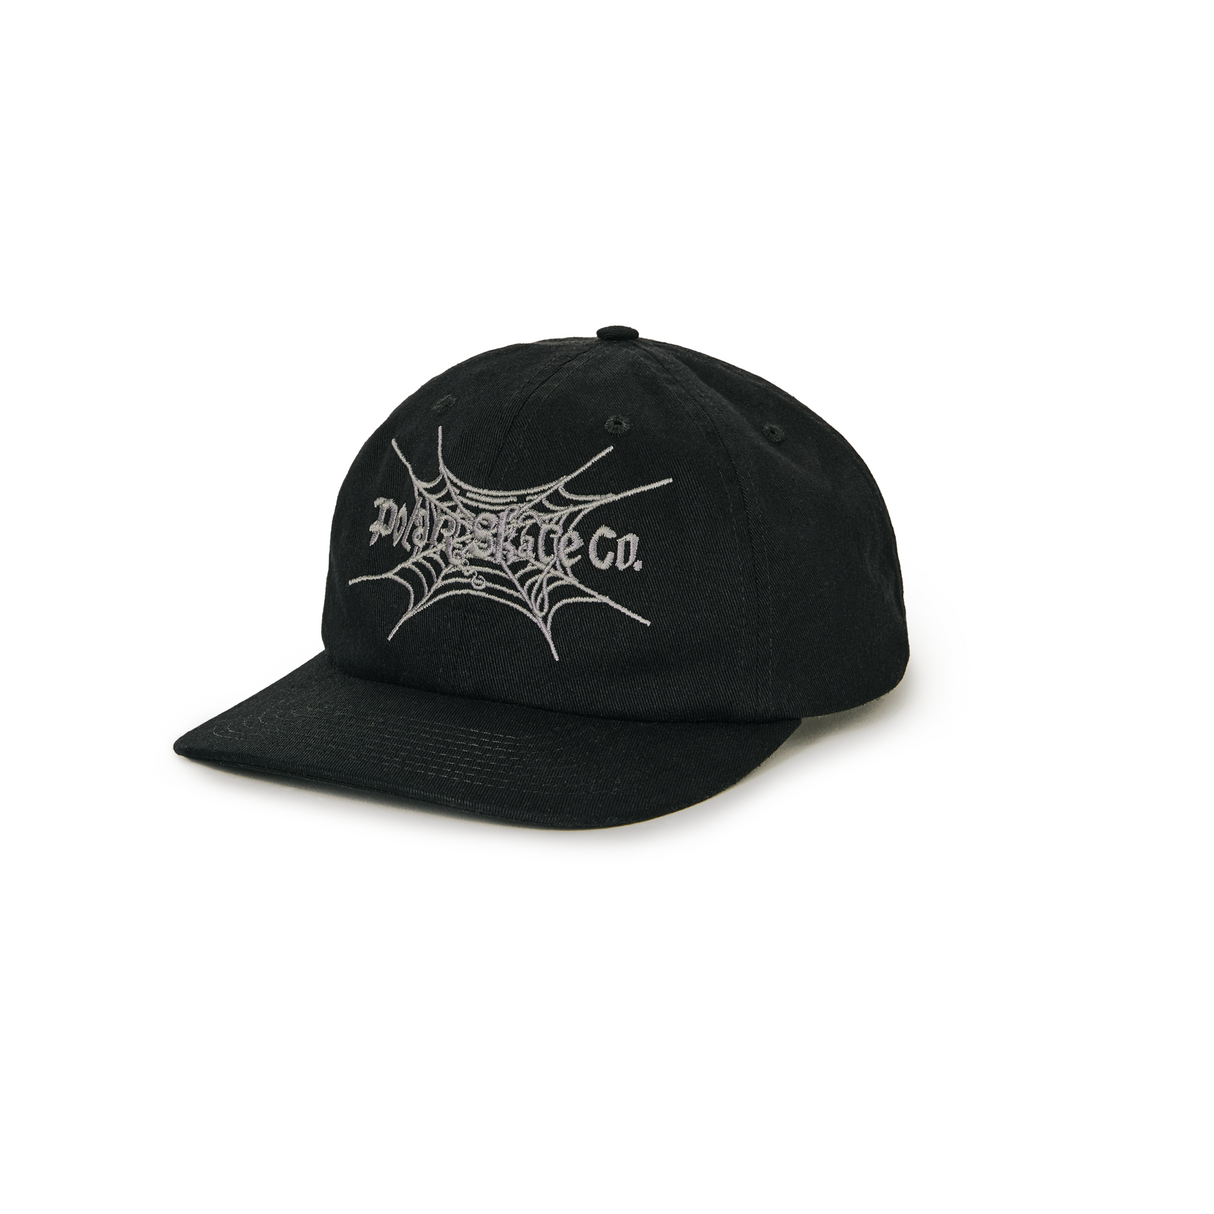 Polar Michael Cap Spiderweb Black Snapback Hat